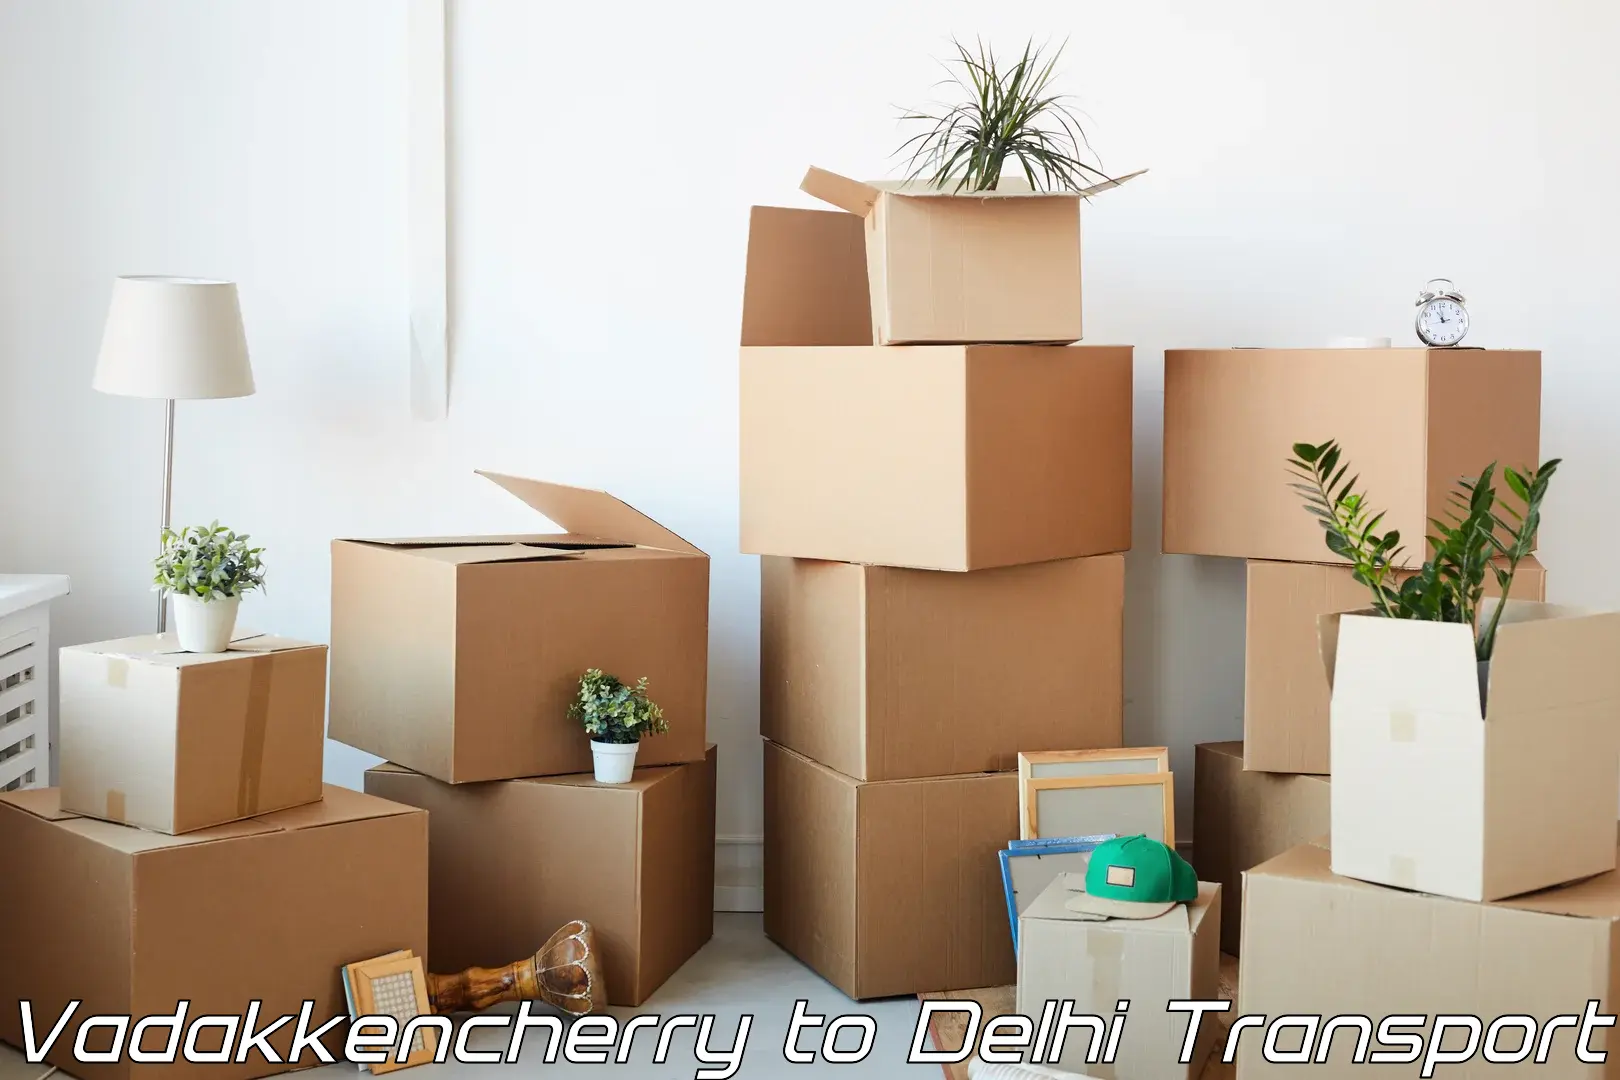 Cargo transportation services Vadakkencherry to University of Delhi